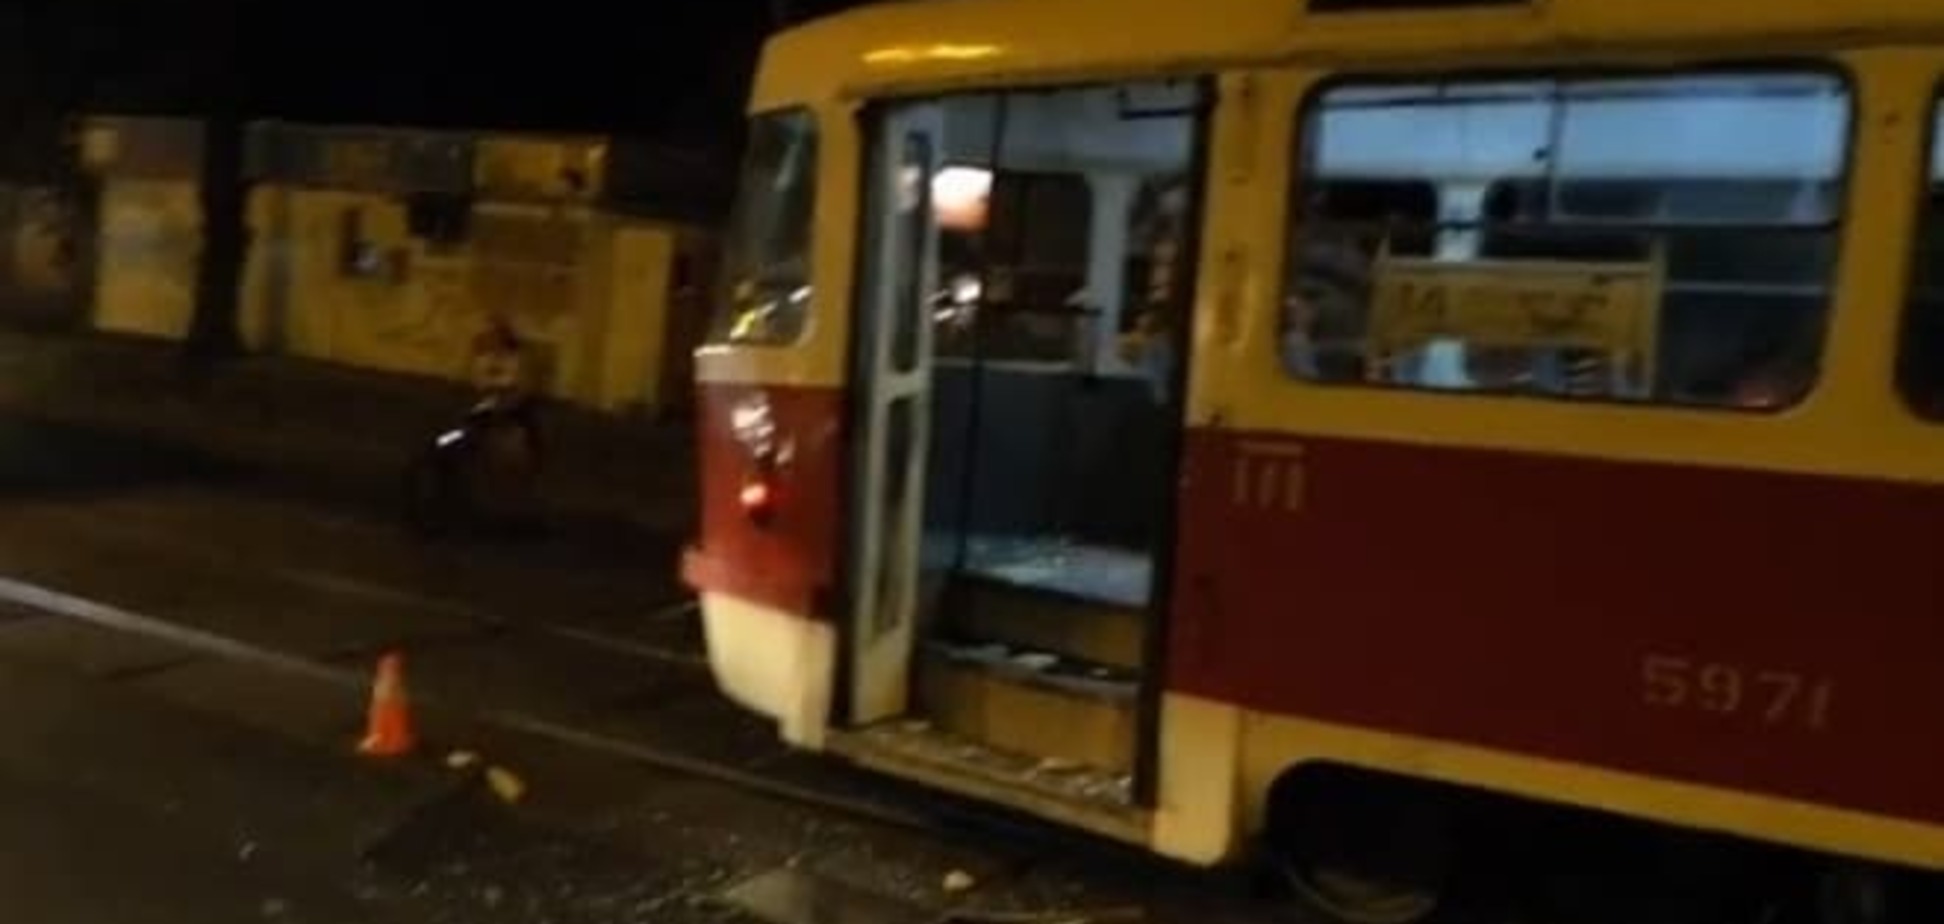 В Киеве МАФ на колесах протаранил трамвай: есть пострадавшие